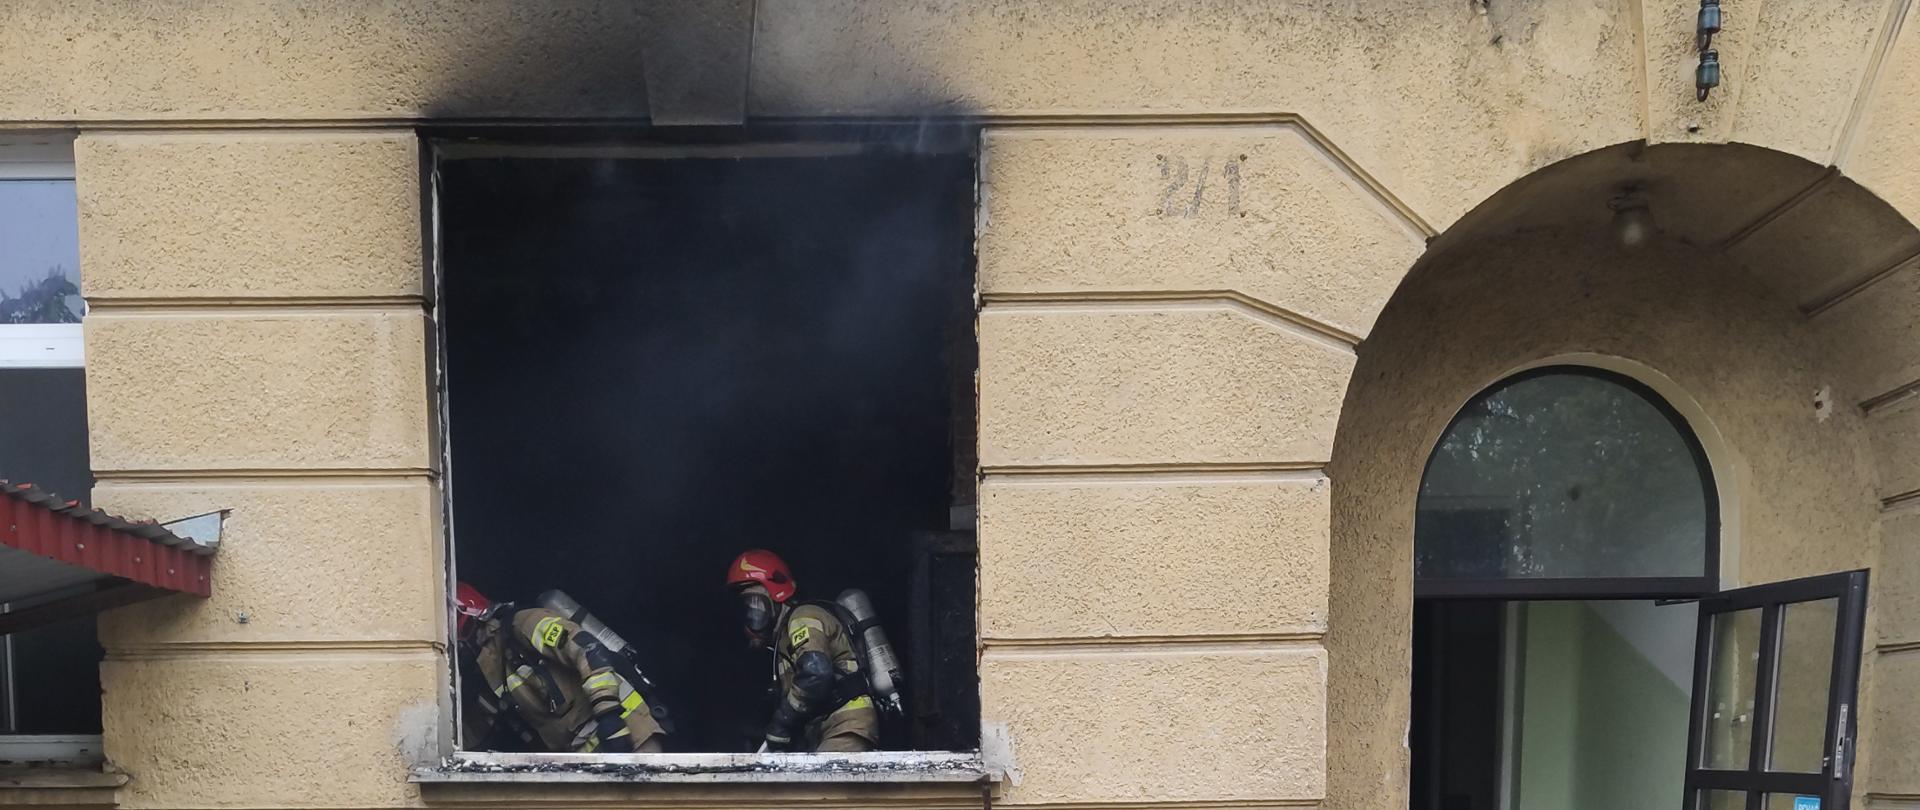 Zdjęcie przedstawia budynek opuszczonego szpitala. W oknie widać dwóch strażaków podczas akcji gaśniczej. Z okna wydobywa się dym, a ściana powyżej jest okopcona. Drzwi po prawej stronie są otwarte i widać wąż gaśniczy rozłożony na schodach. Pod oknem leżą nadpalone elementy wyrzucone z gabinetu. 